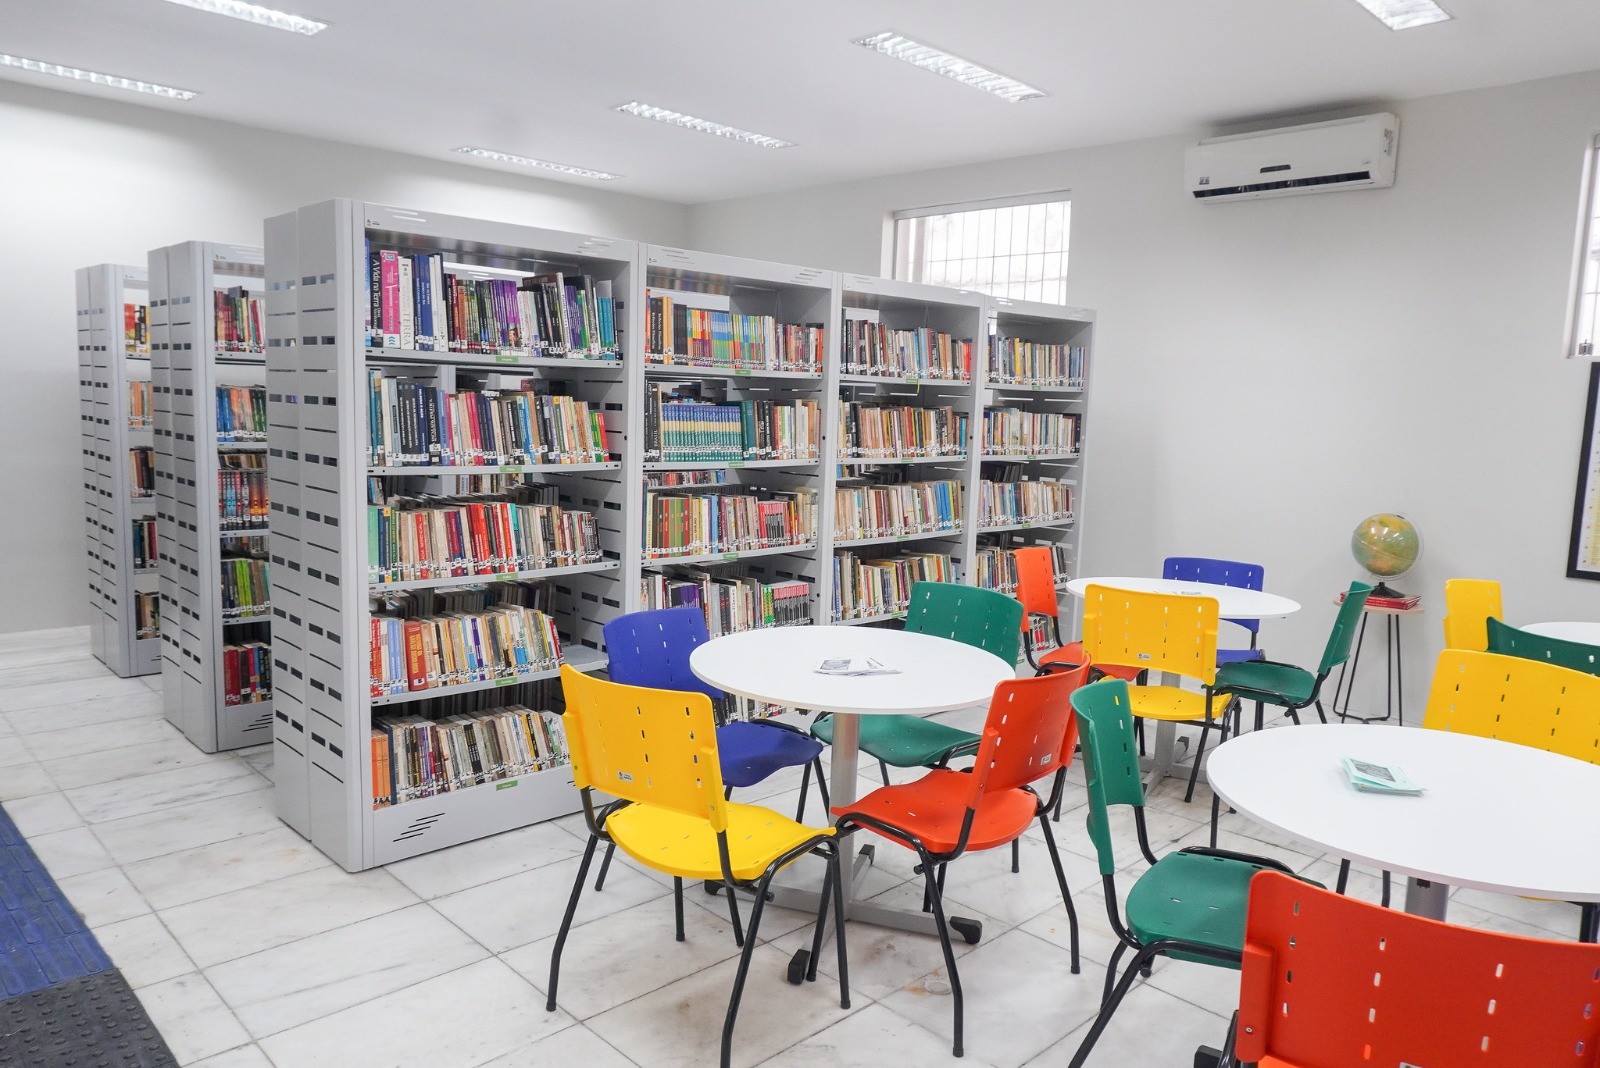 Após oito anos fechada, Biblioteca Municipal Álvaro Lins é reinaugurada em Caruaru